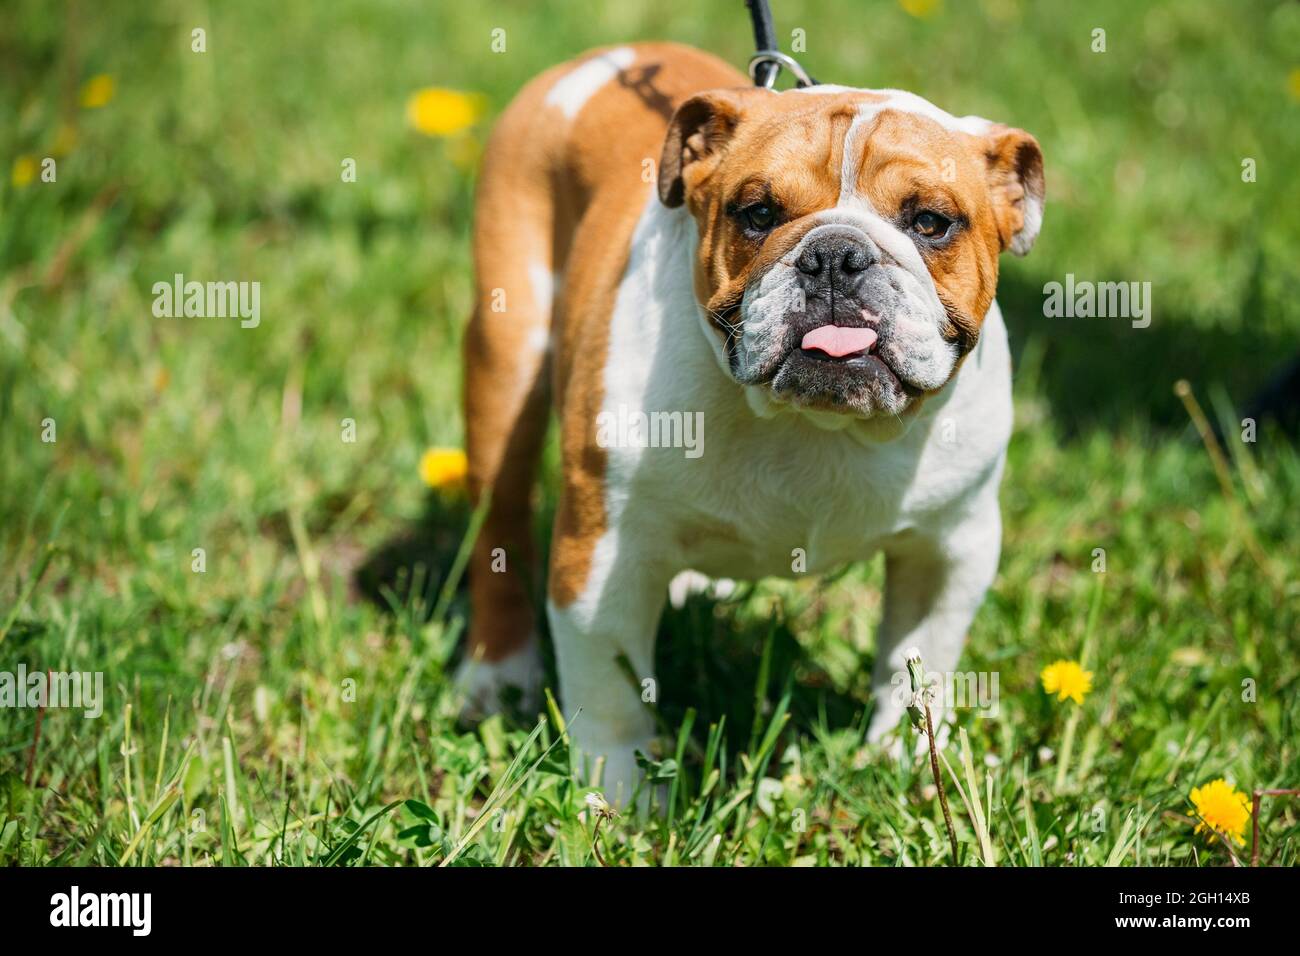 bulldog grass hi-res stock photography images - Alamy